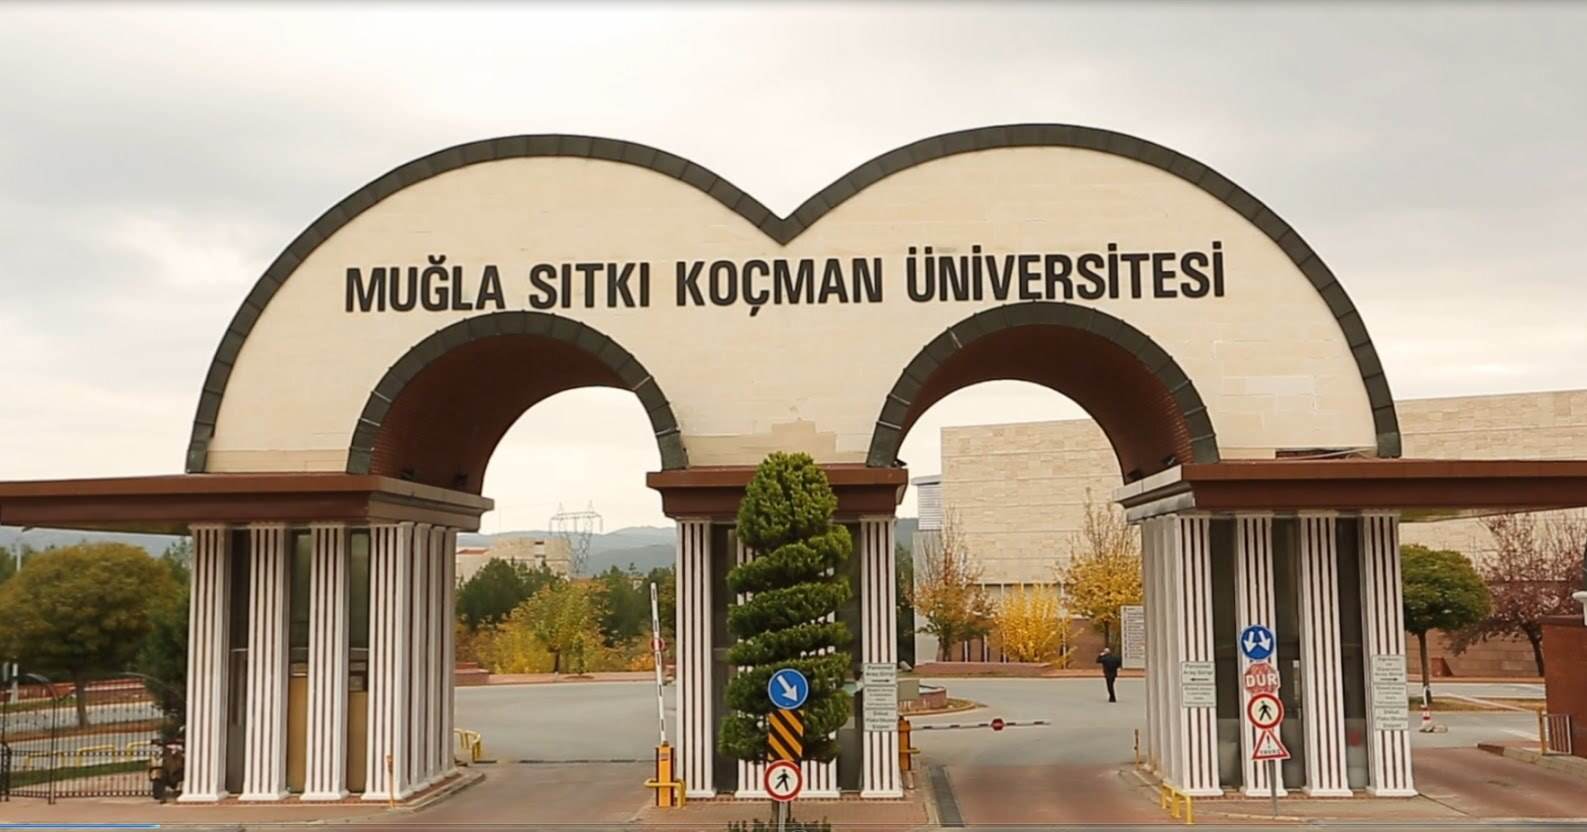 Muğla Sıtkı Koçman Üniversitesi Su Ürünleri Fakültesi